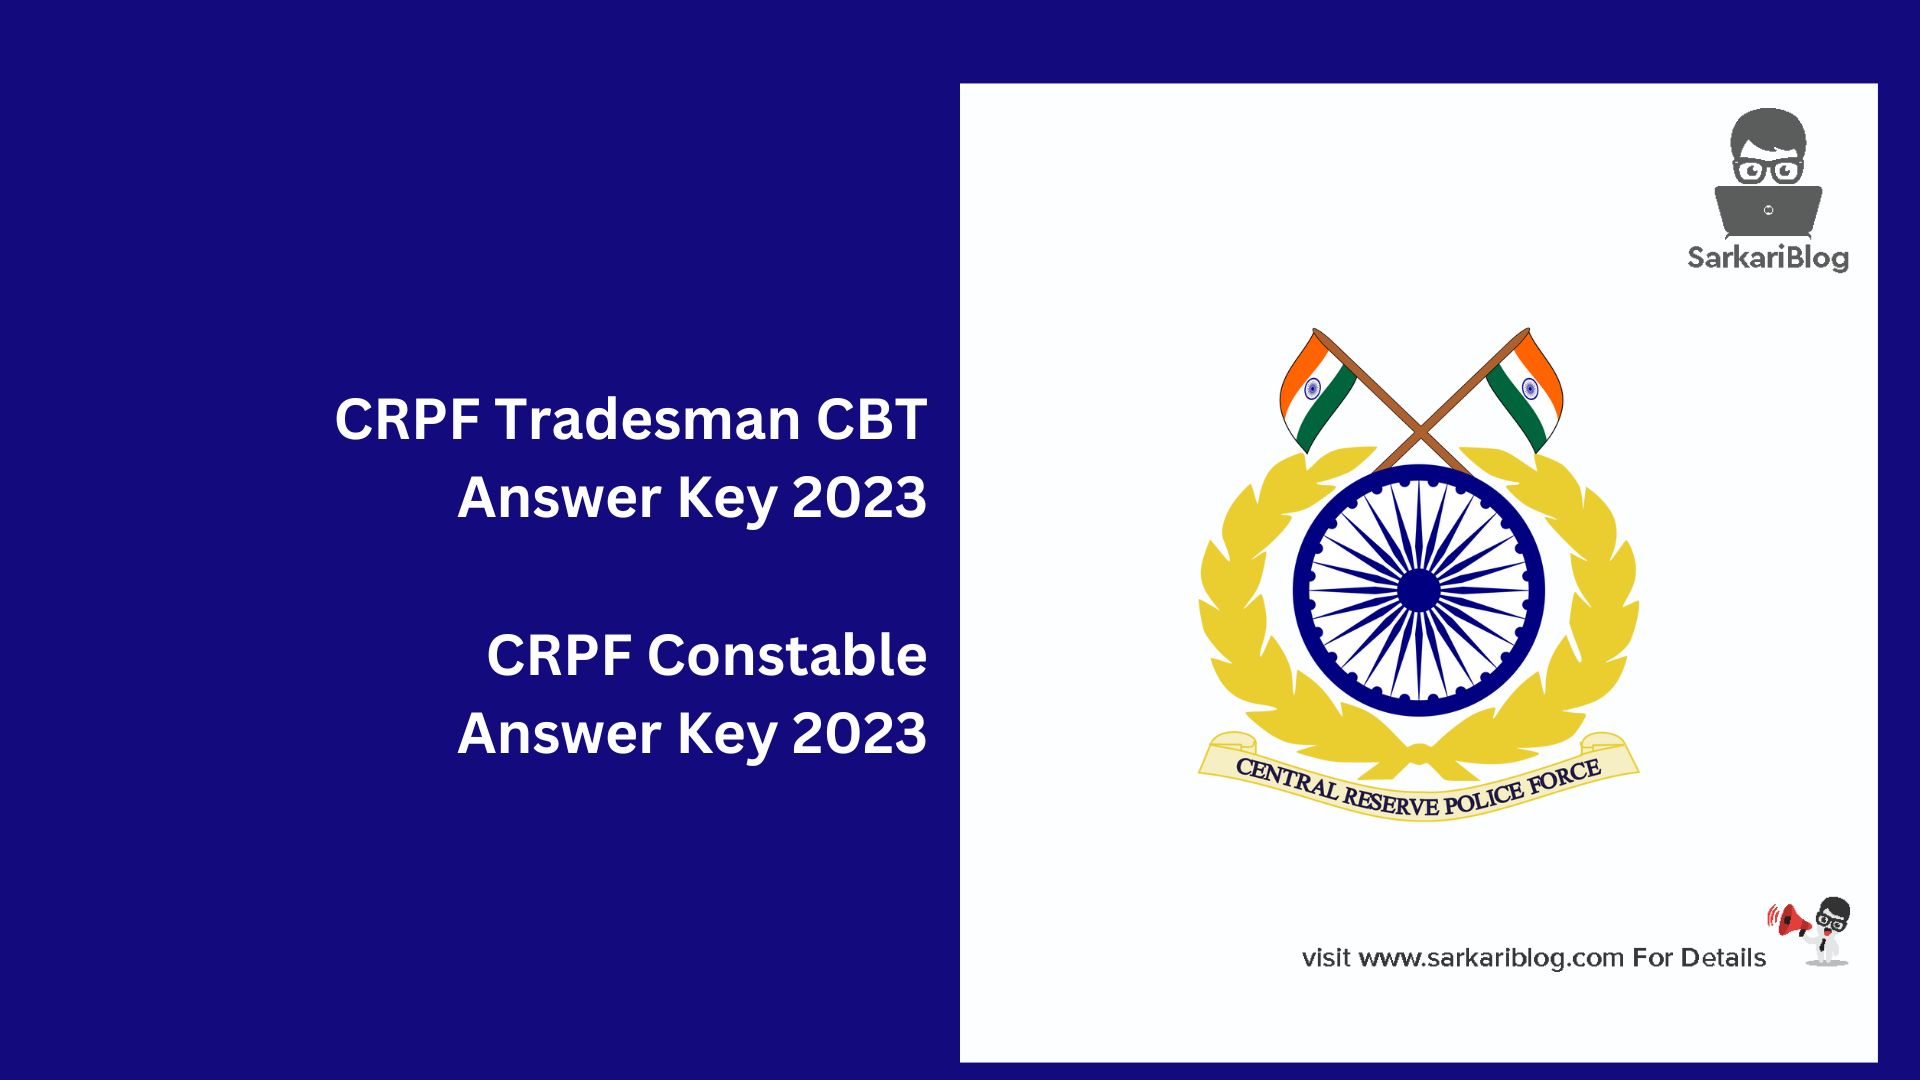 CRPF Tradesman CBT Answer Key 2023